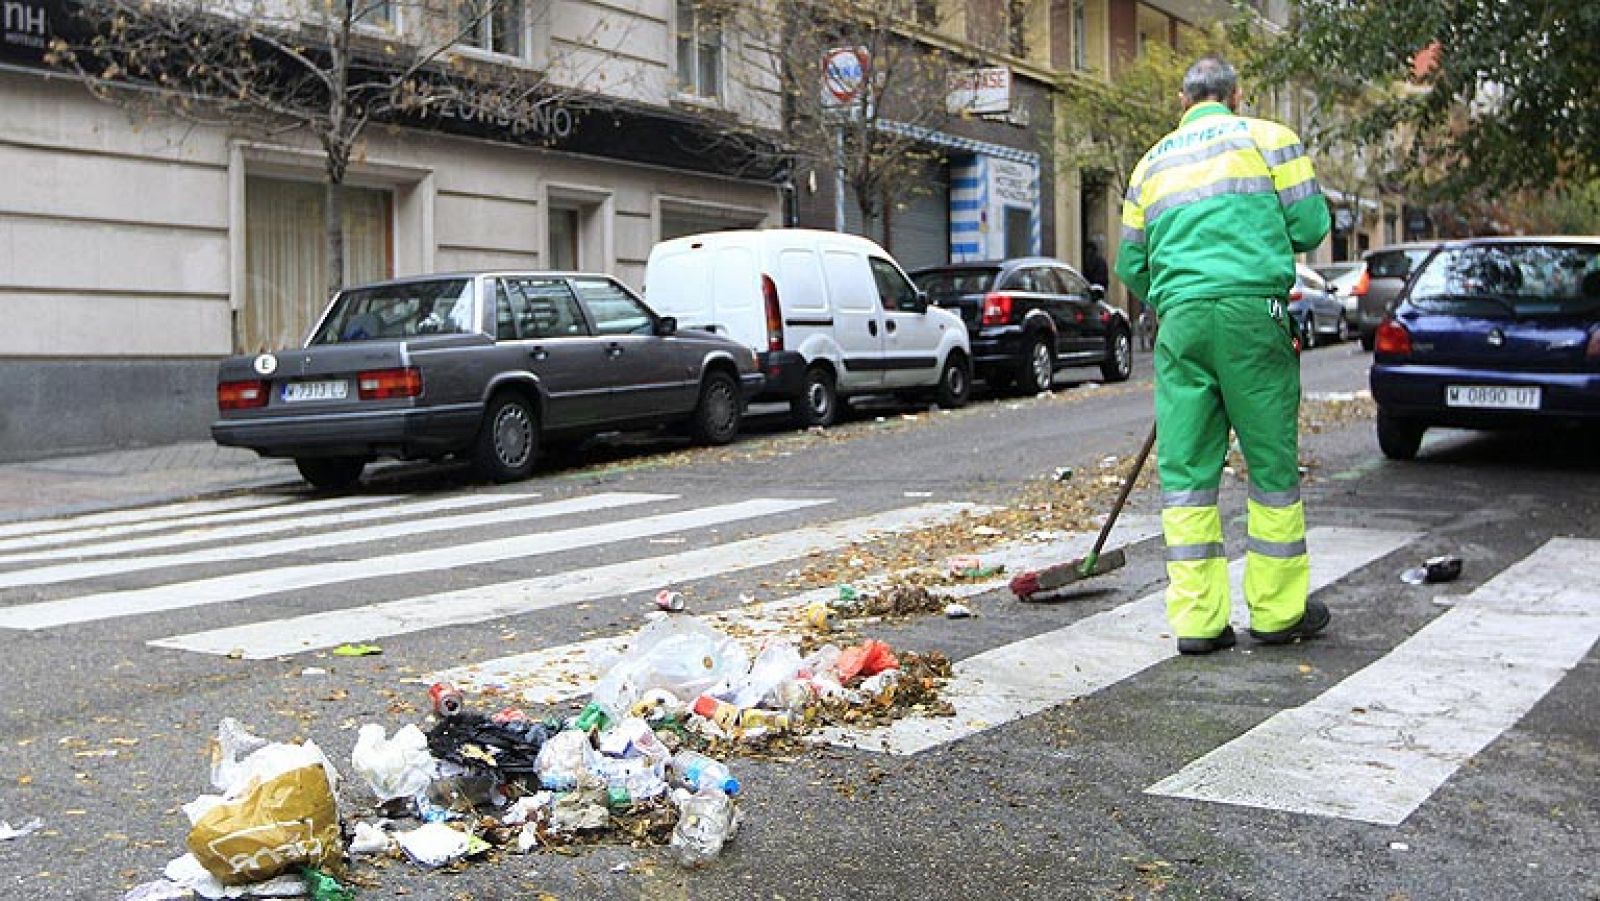 Los trabajadores de la limpieza viaria y jardines de Madrid ya han vuelto al trabajo. La basura va poco a poco disminuyendo en las calles de la capital, después de que los sindicatos desconvocasen la huelga de limpiezacontra el despido de 1.134 trabajadores y la rebaja salarial por parte de las empresas concesionarias de estos servicios del Ayuntamiento (FCC-Alfonso Benítez, Cespa, Sacyr-Valoriza, OHL-Ascan).